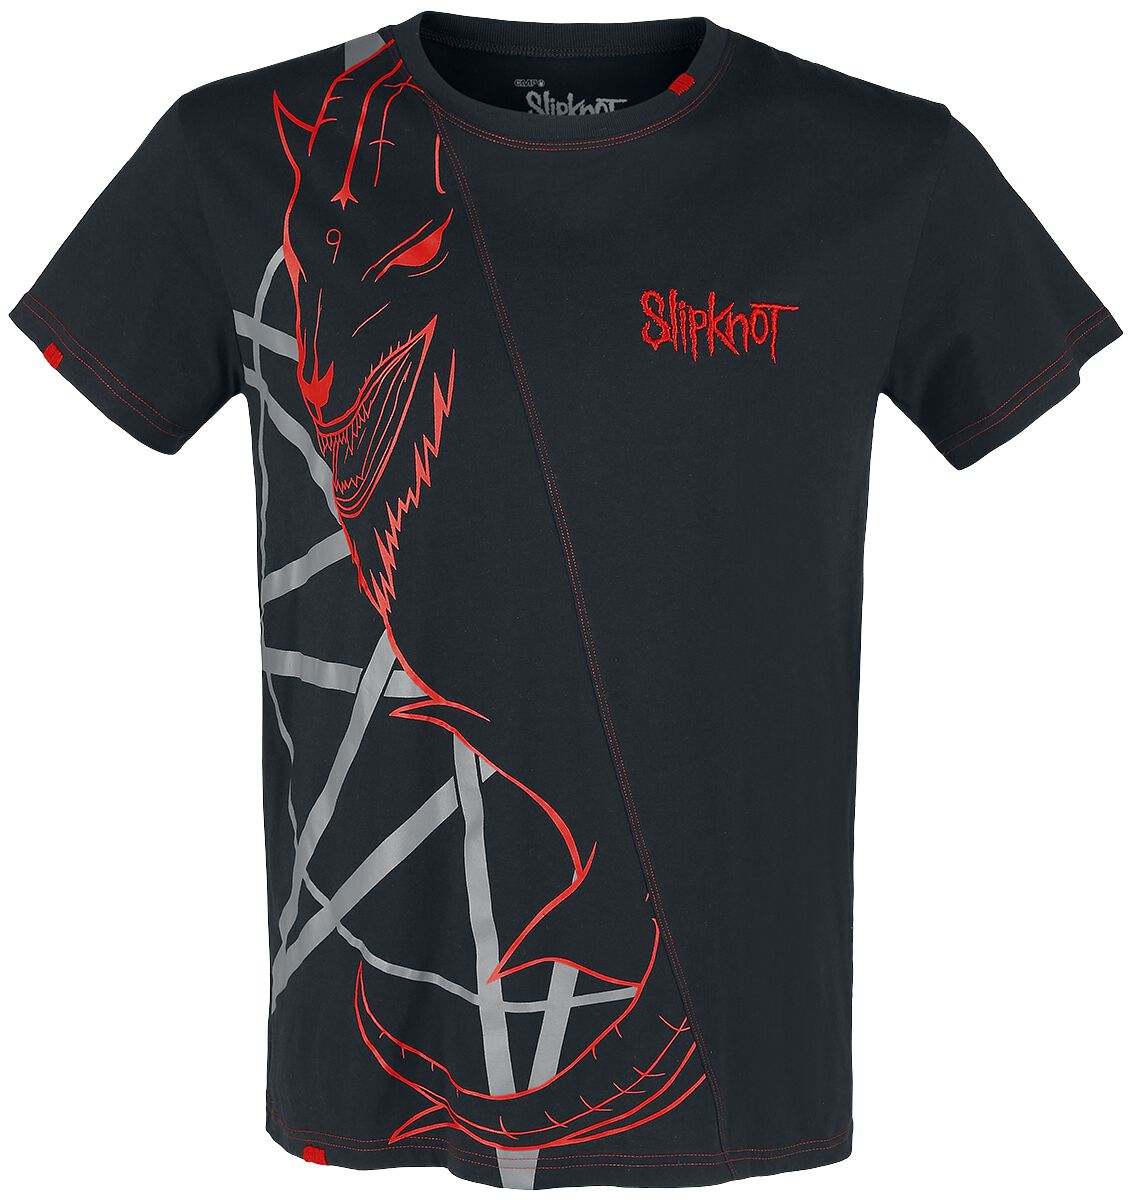 Slipknot T-Shirt - EMP Signature Collection - S bis 5XL - für Männer - Größe 3XL - schwarz/rot  - EMP exklusives Merchandise! von Slipknot